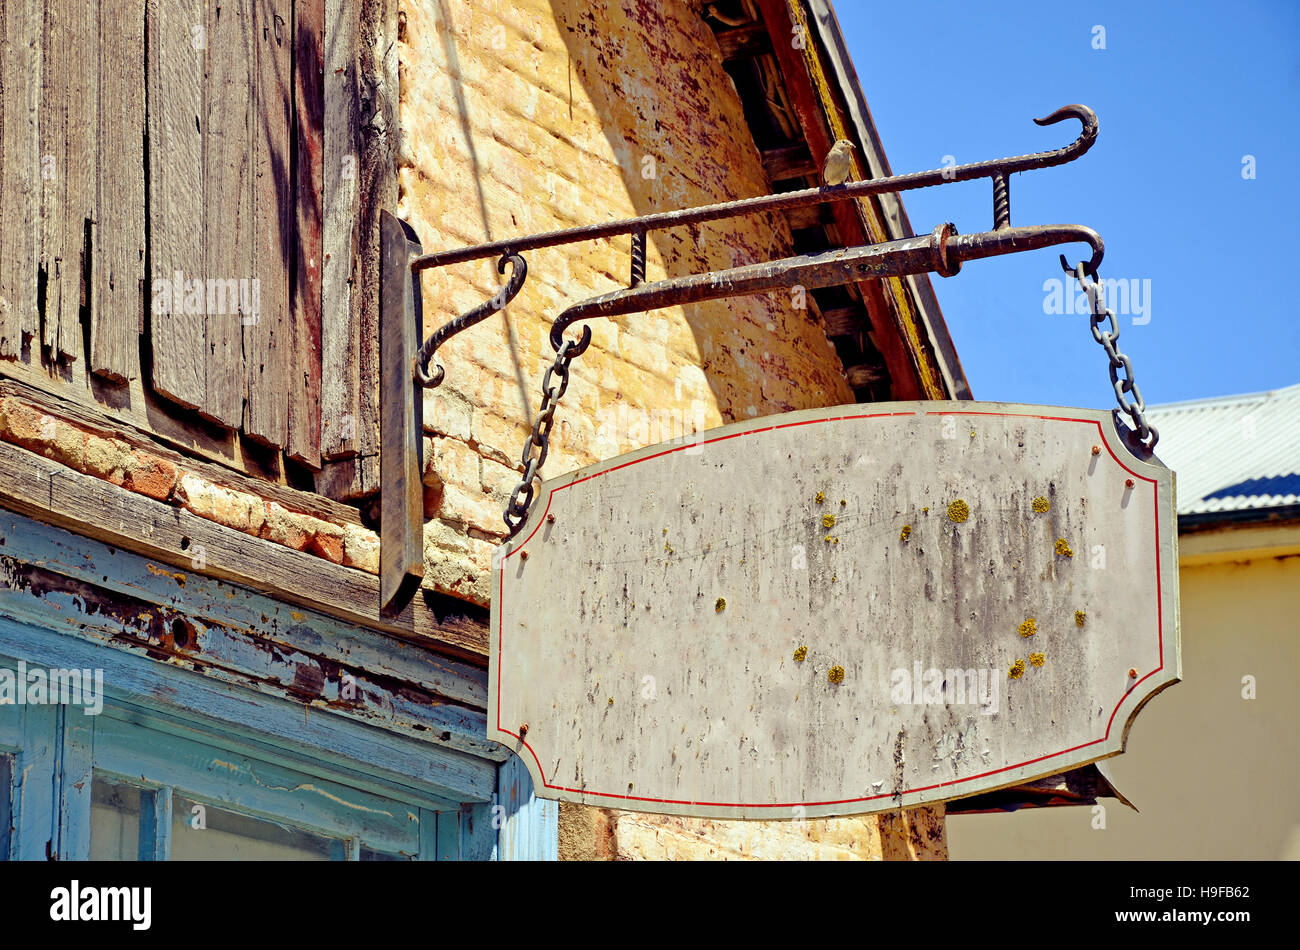 Vintage distressed rustikalere Zeichen hängen Flechten und Moos am Ladenfront des historischen Gebäudes bedeckt. Platz für Text zu kopieren. Stockfoto